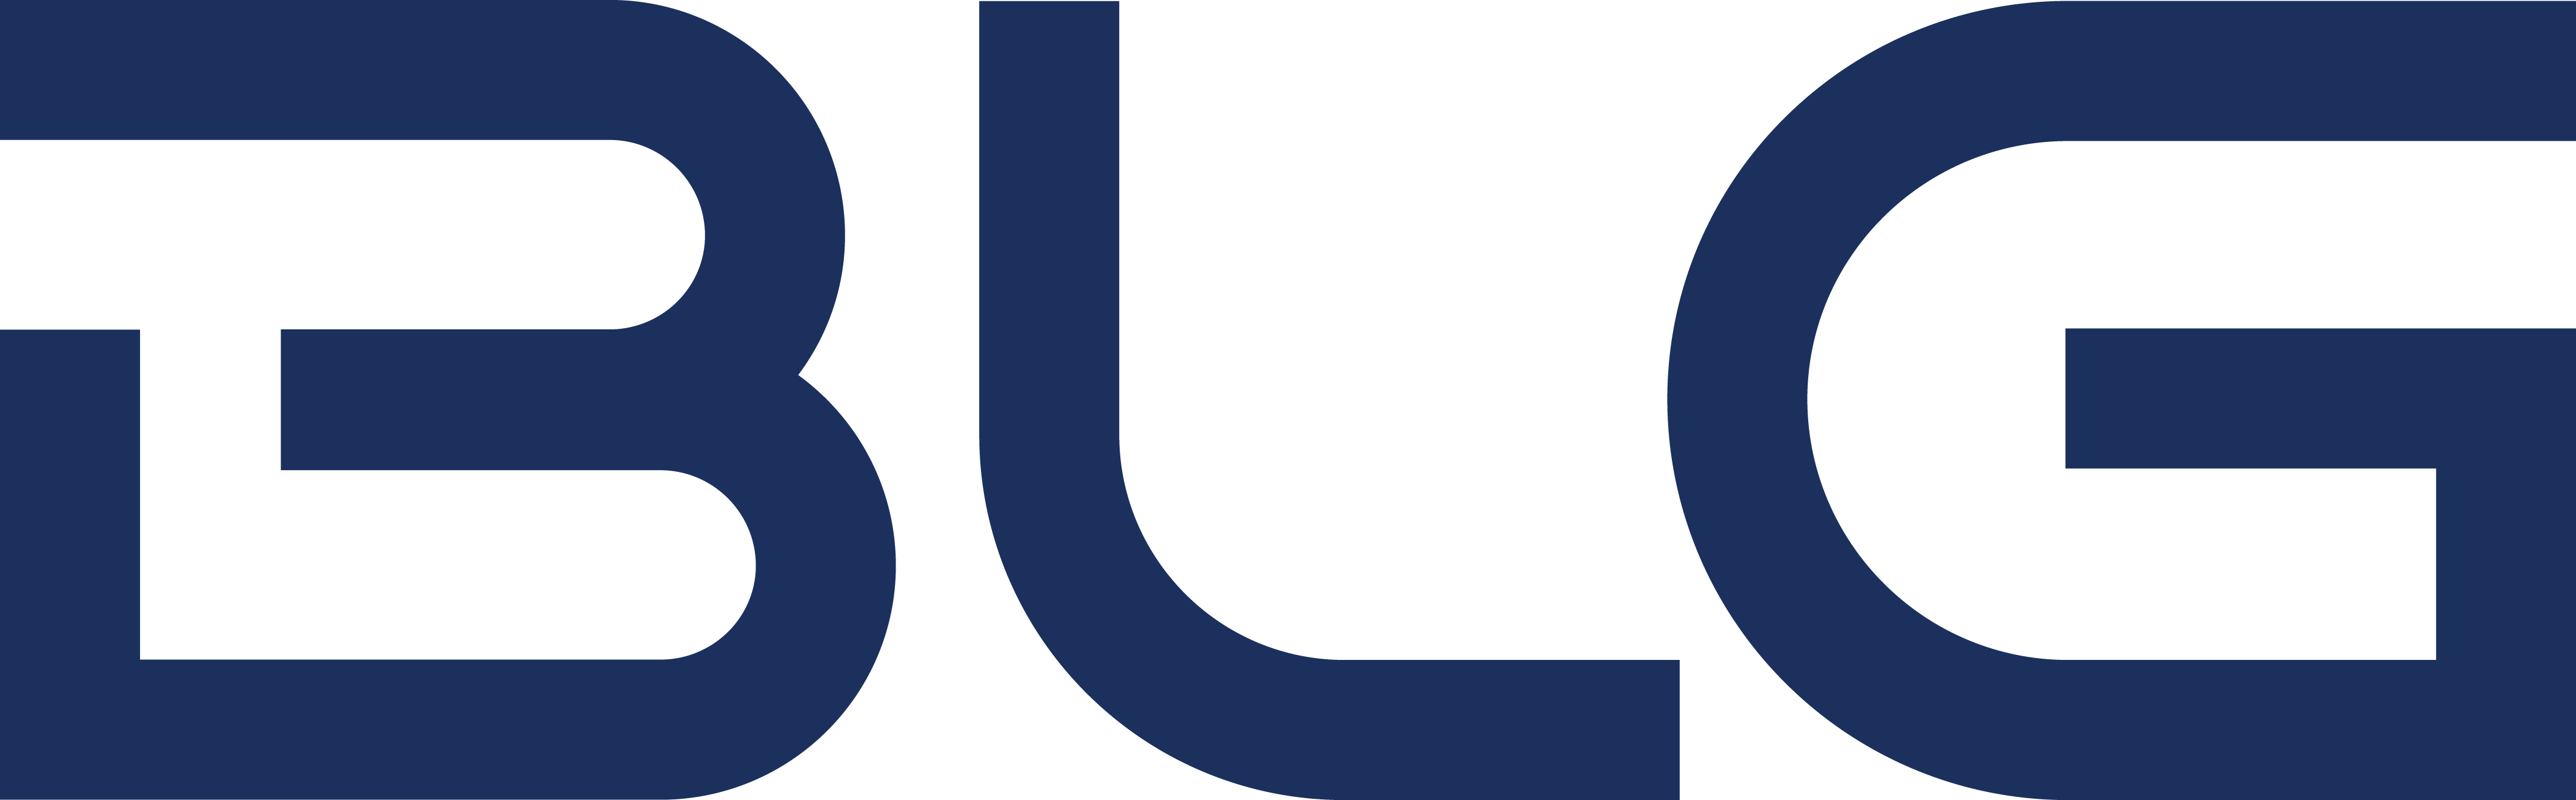 BLG_Letters_Logo_Blue_RGB_HR.PNG